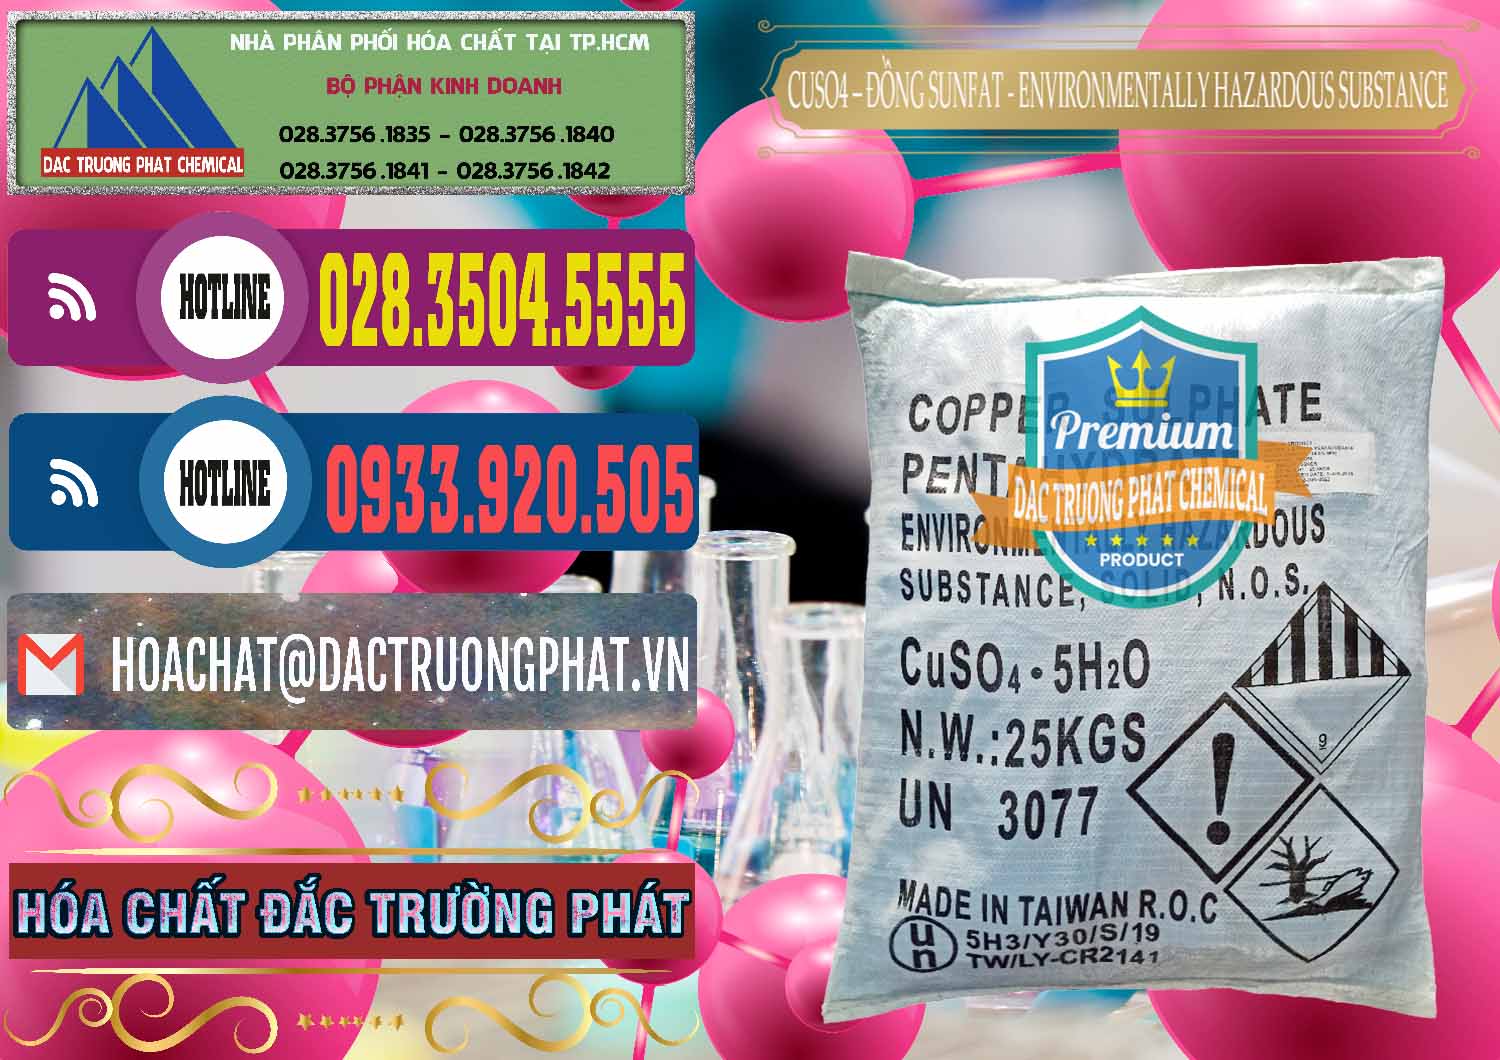 Nơi chuyên cung ứng _ bán CuSO4 – Đồng Sunfat Đài Loan Taiwan - 0059 - Công ty chuyên cung ứng _ phân phối hóa chất tại TP.HCM - muabanhoachat.com.vn